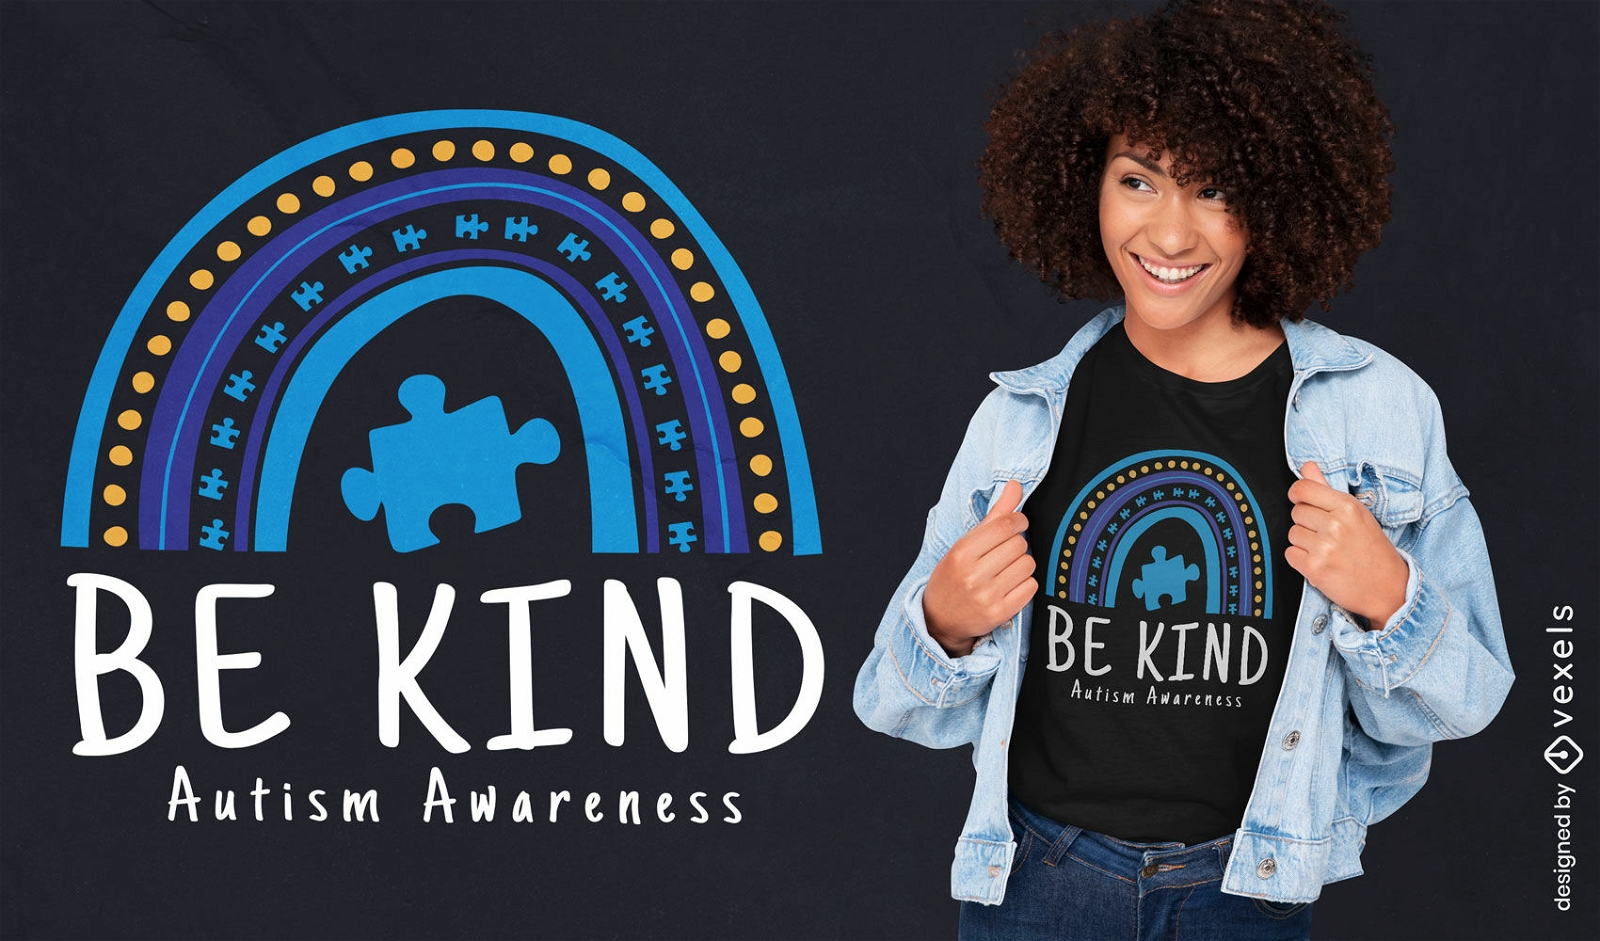 Seien Sie netter Autismus-Bewusstseins-Zitat-T-Shirt Entwurf